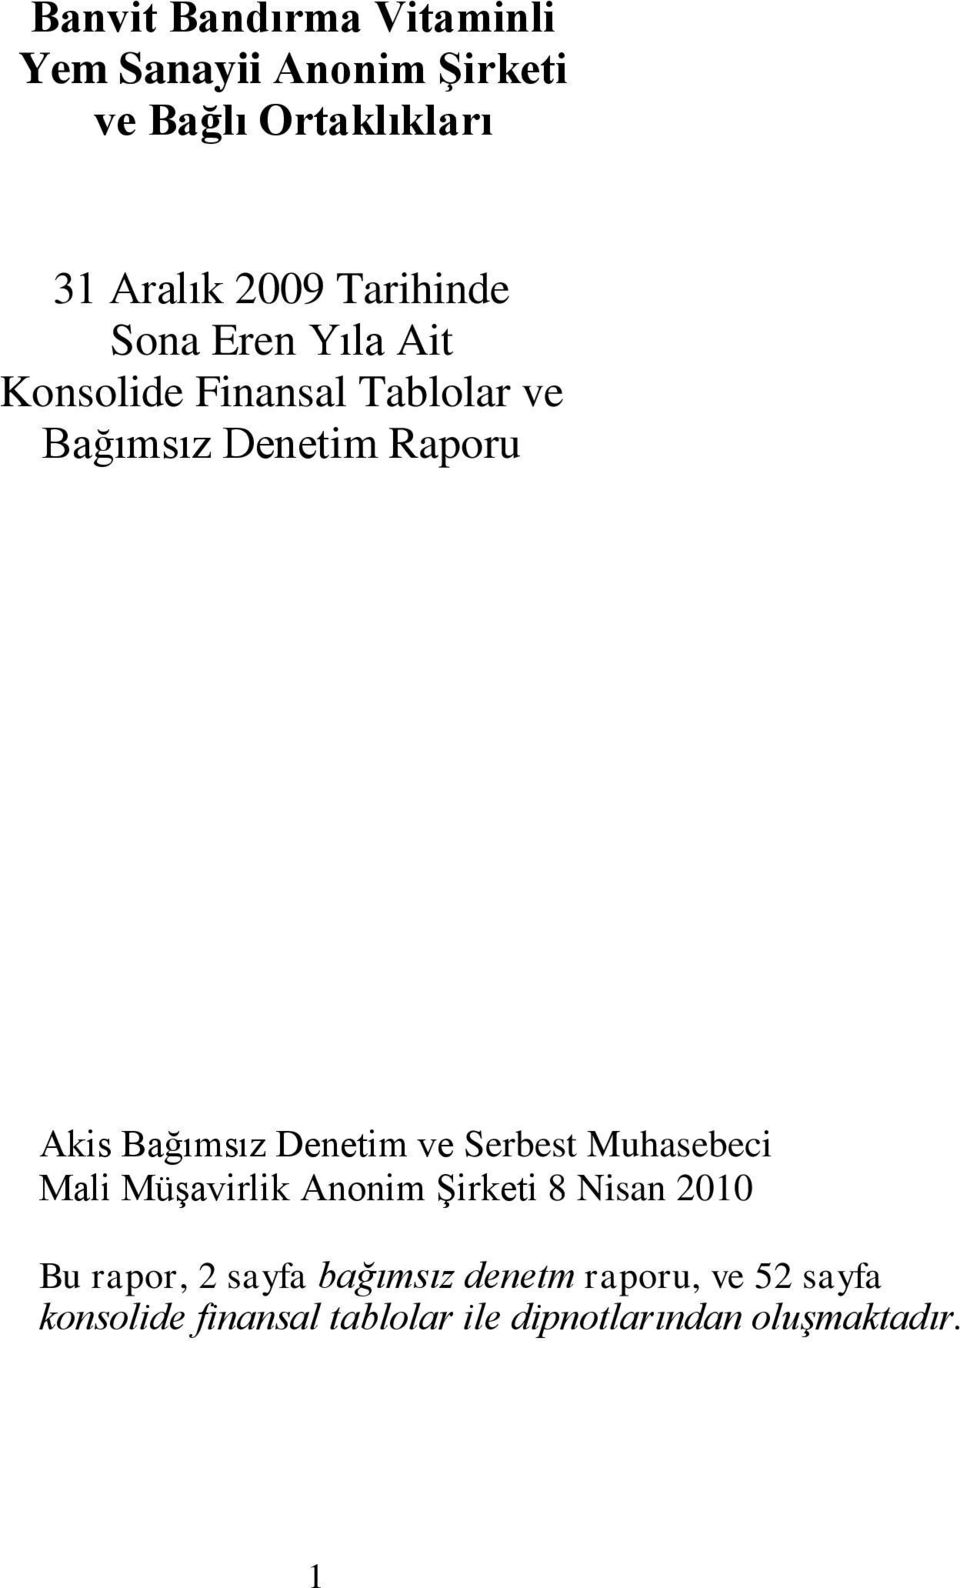 Bağımsız Denetim ve Serbest Muhasebeci Mali MüĢavirlik Anonim ġirketi 8 Nisan 2010 Bu rapor, 2